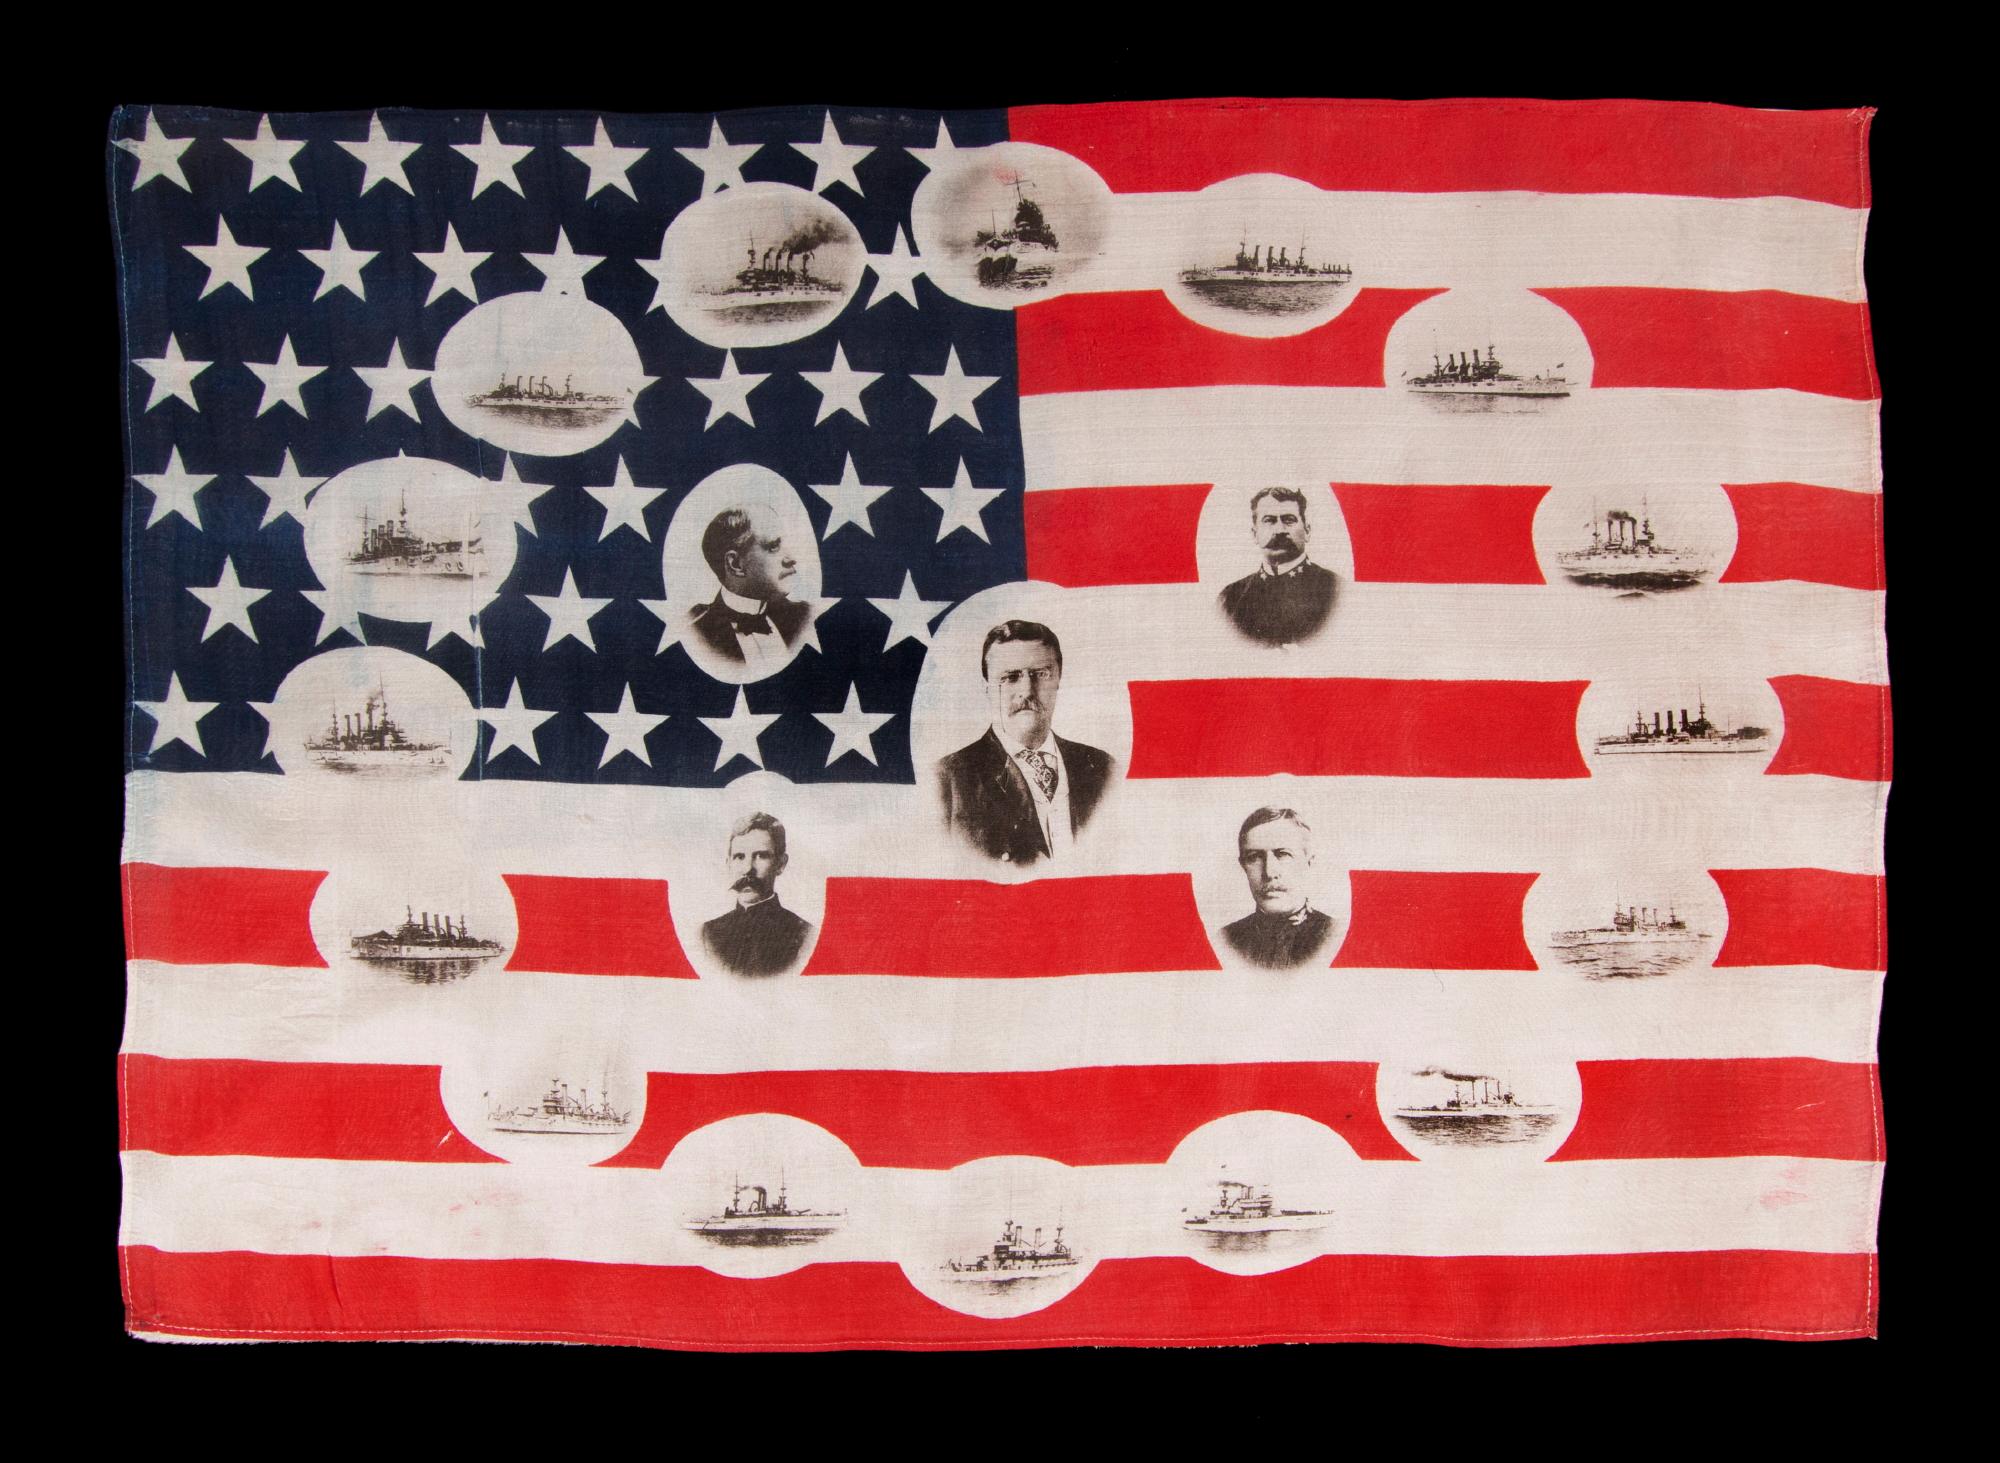 Rare et magnifique drapeau de parade américain avec des images de Teddy Roosevelt et de sa Grande Flotte Blanche, 1907-1909, ex-collection Richard Pierce :

drapeau de parade à 46 étoiles, imprimé sur de la soie très fine, réalisé pour célébrer le